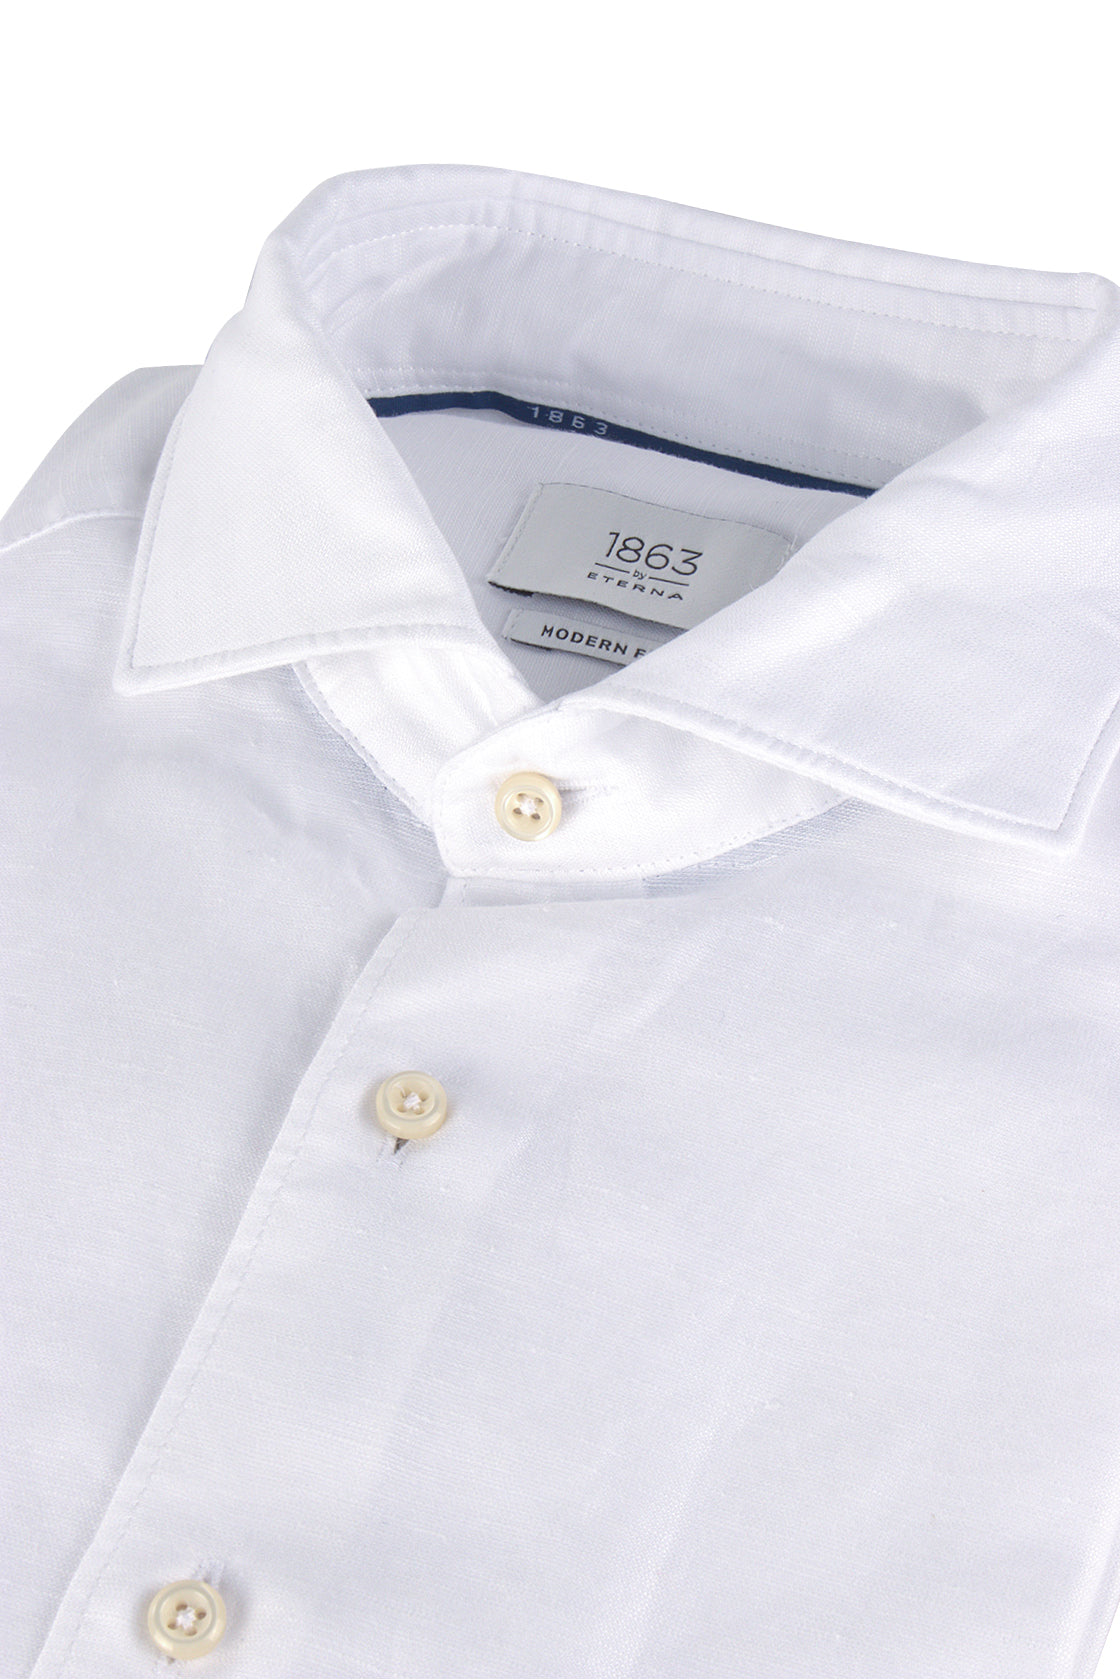 Eterna XS82 Mod Fit Linen Shirt White